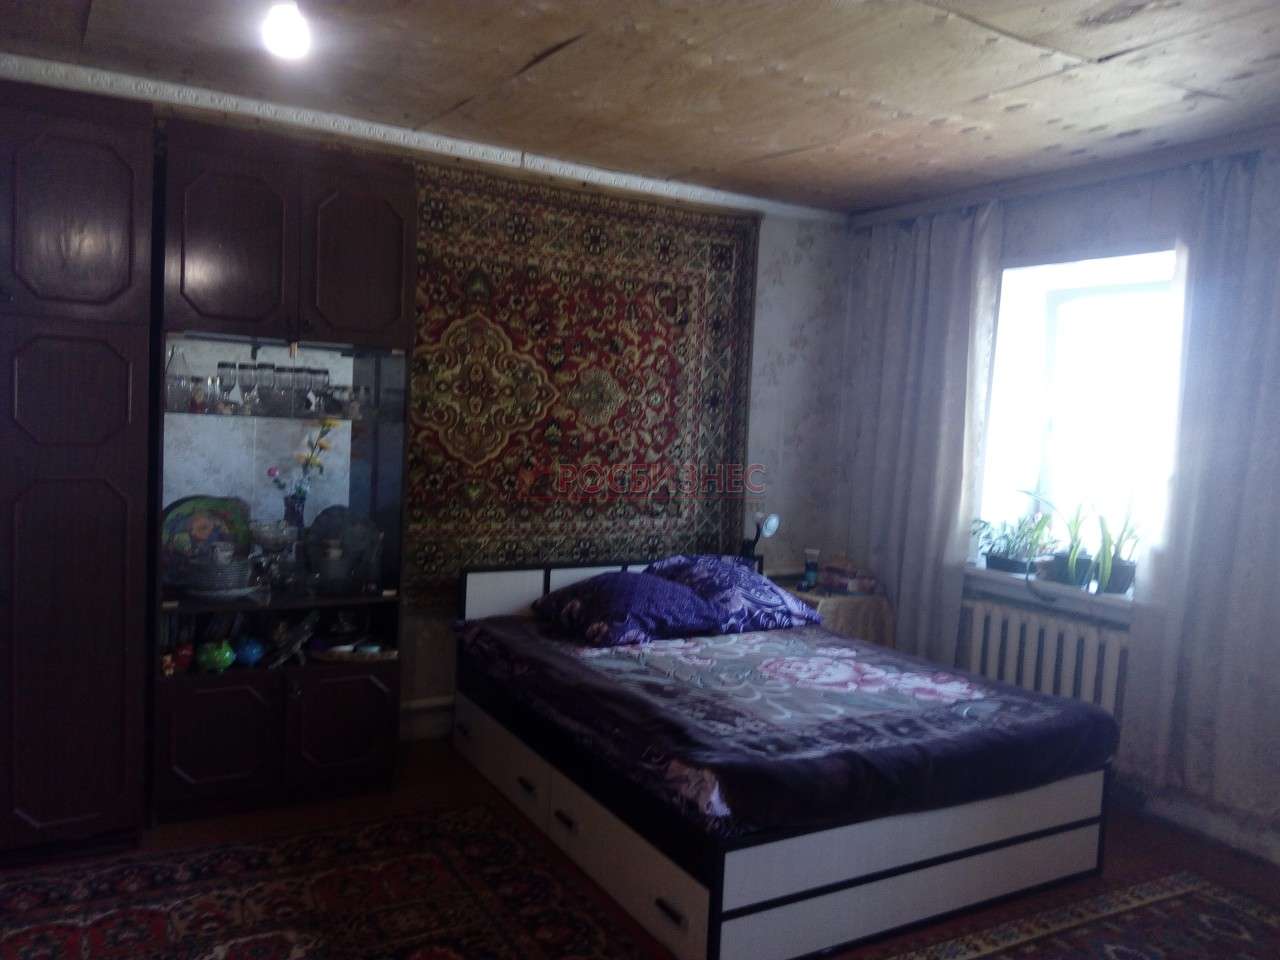 Продажа Дом стоимость 8.5 млн рублей по адресу Новосибирская область, Новосибирск, ул. Суркова, д. 0